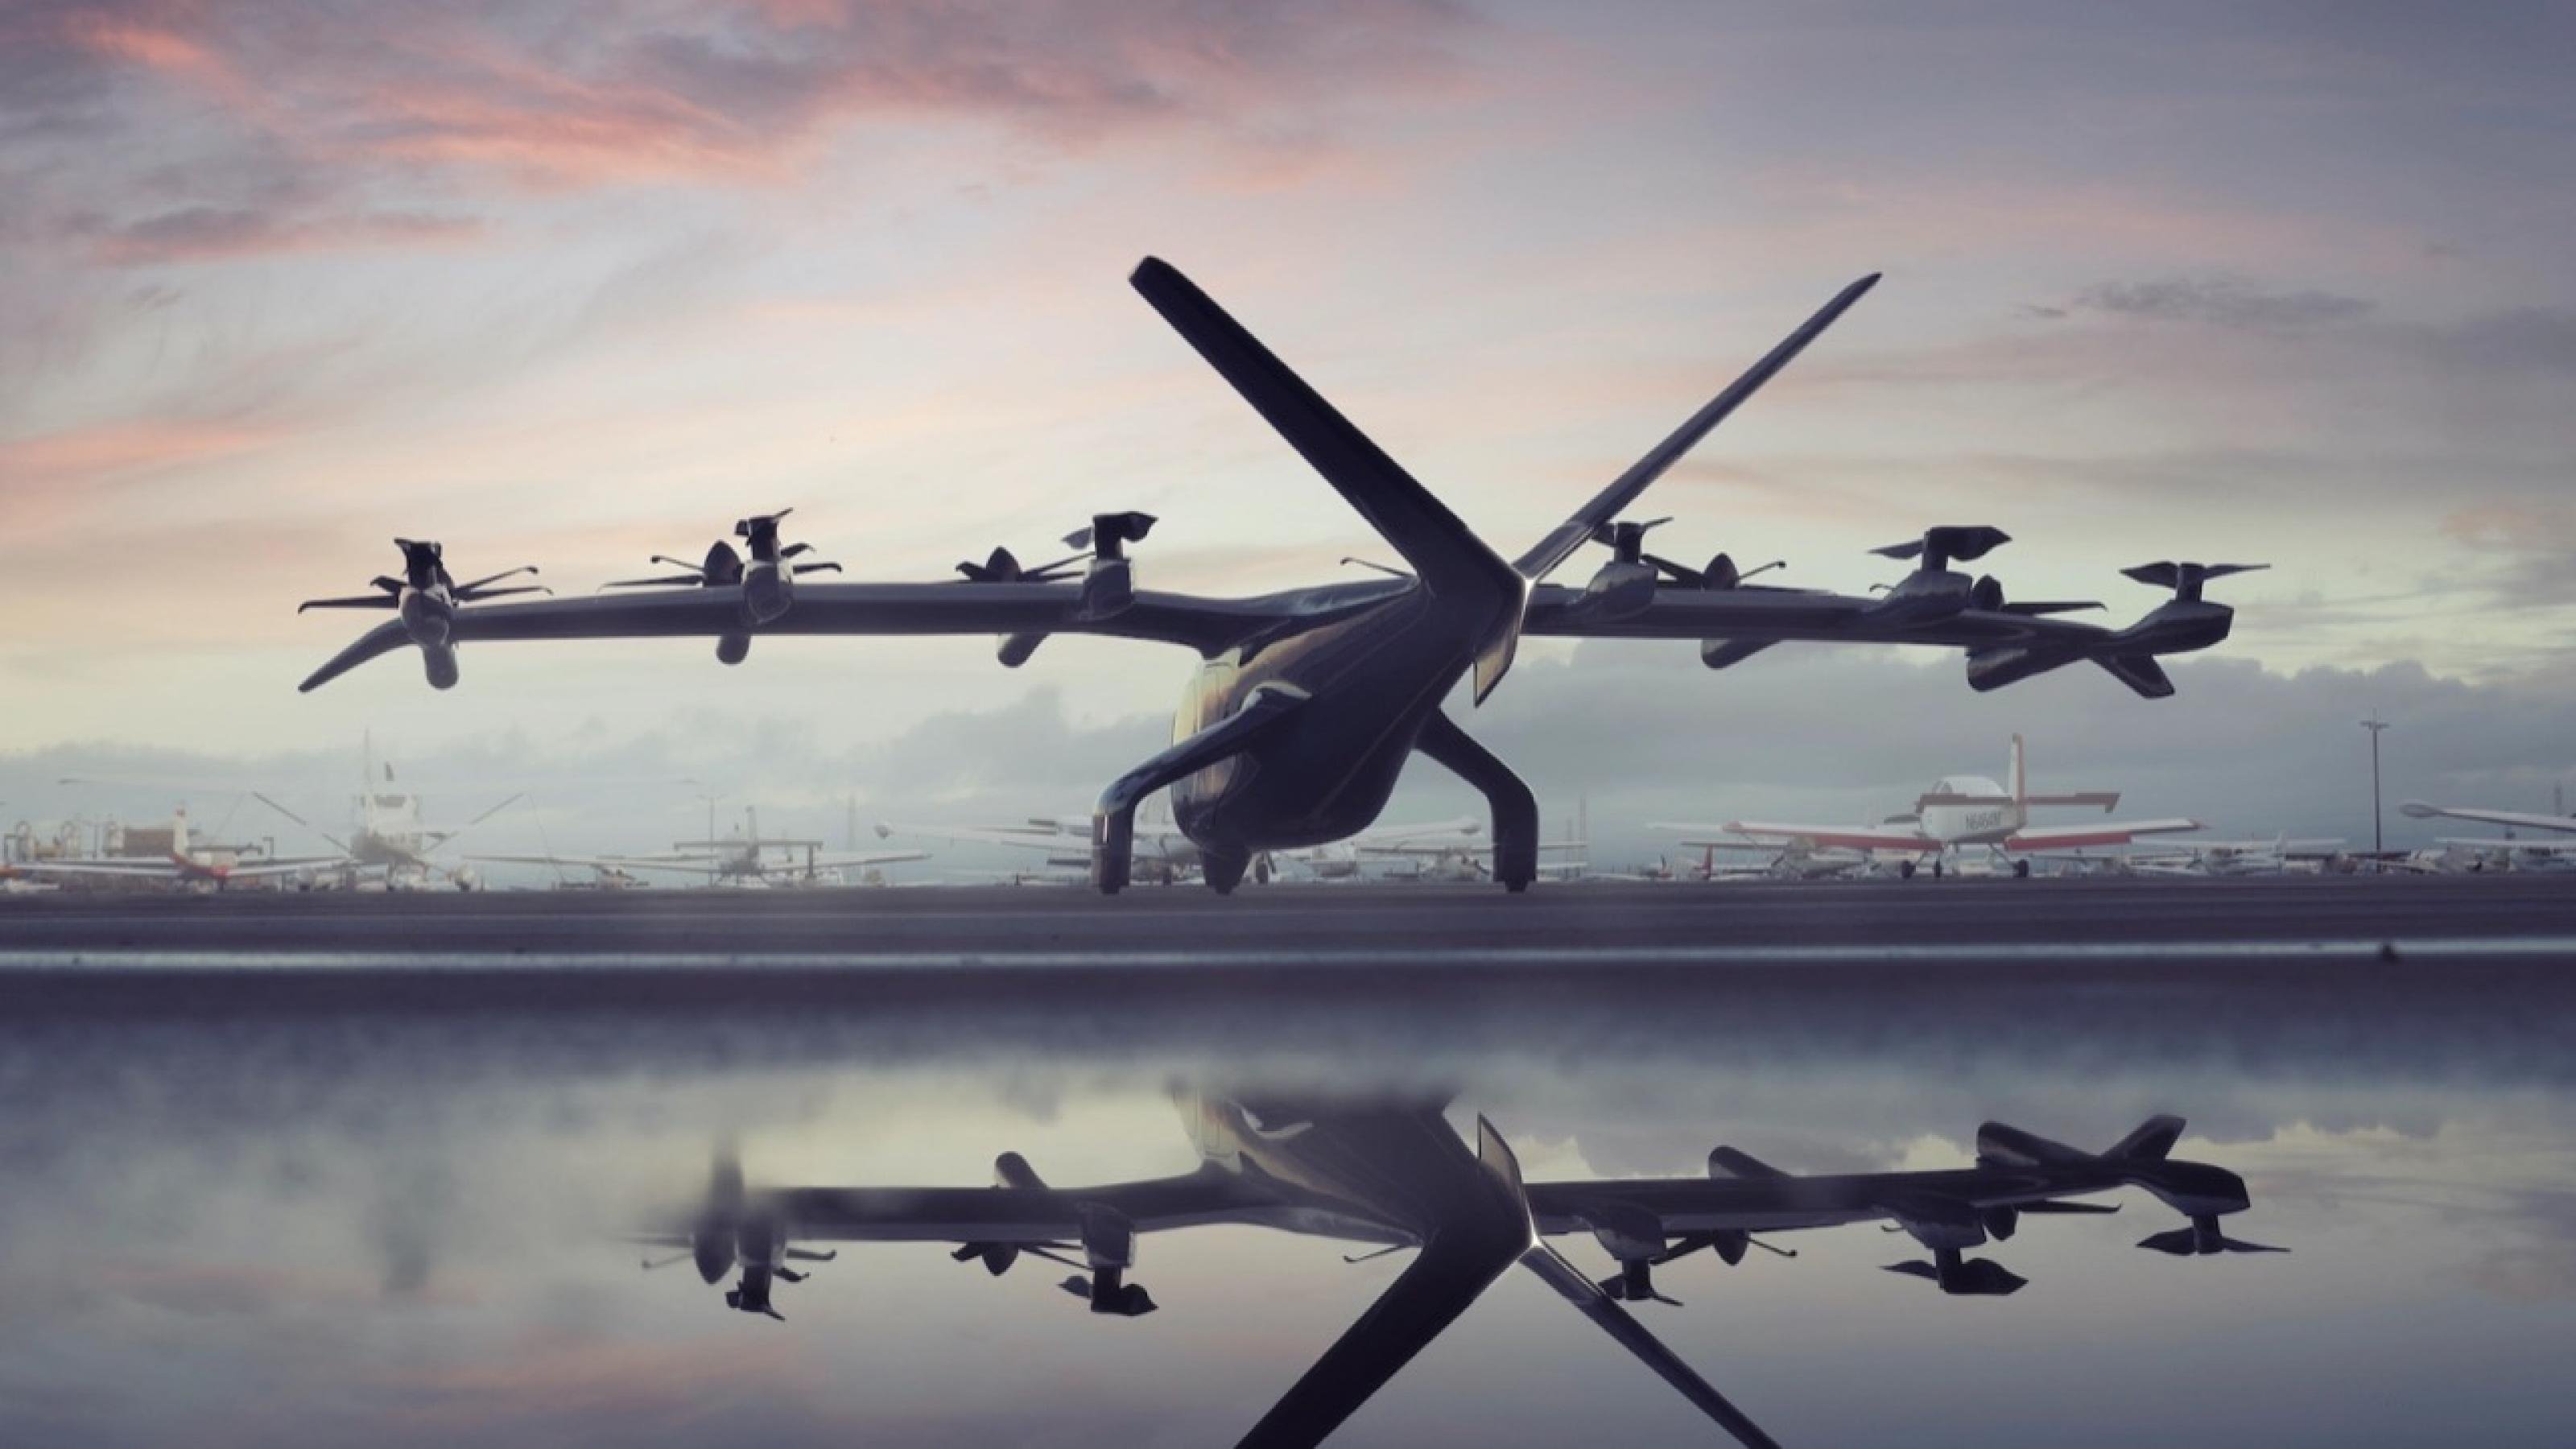 Flugtaxis, eine Mischung aus Drohne, Hubschrauber, und Privatjet stehen startbereit vor einem Abendhimmel.